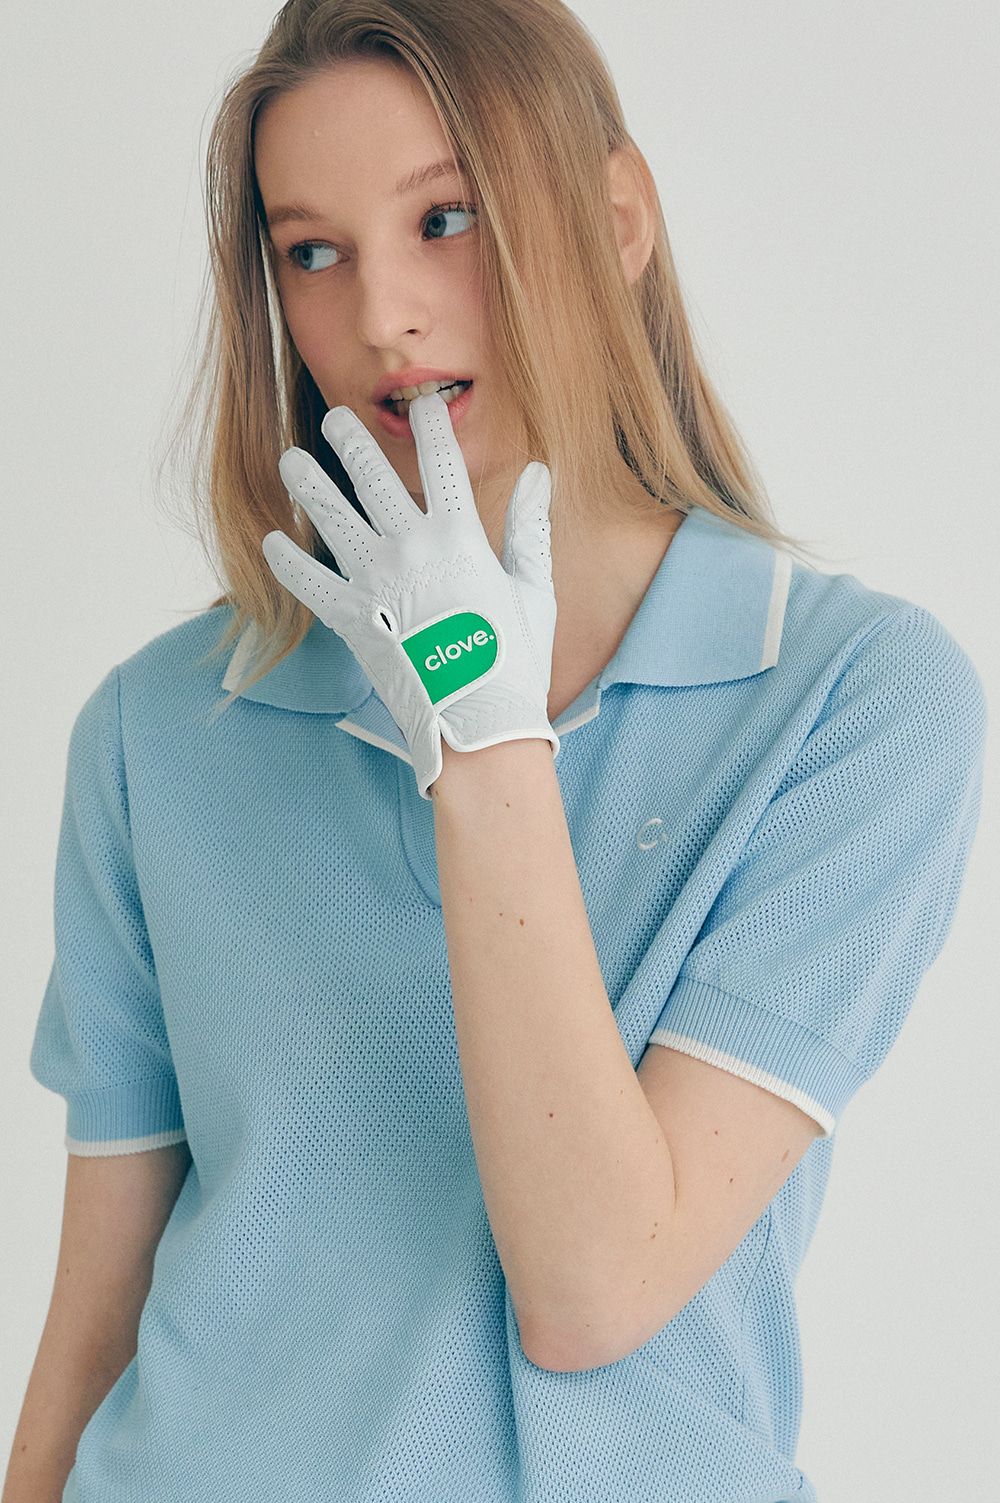 clove - Golf Glove for Women (Green)